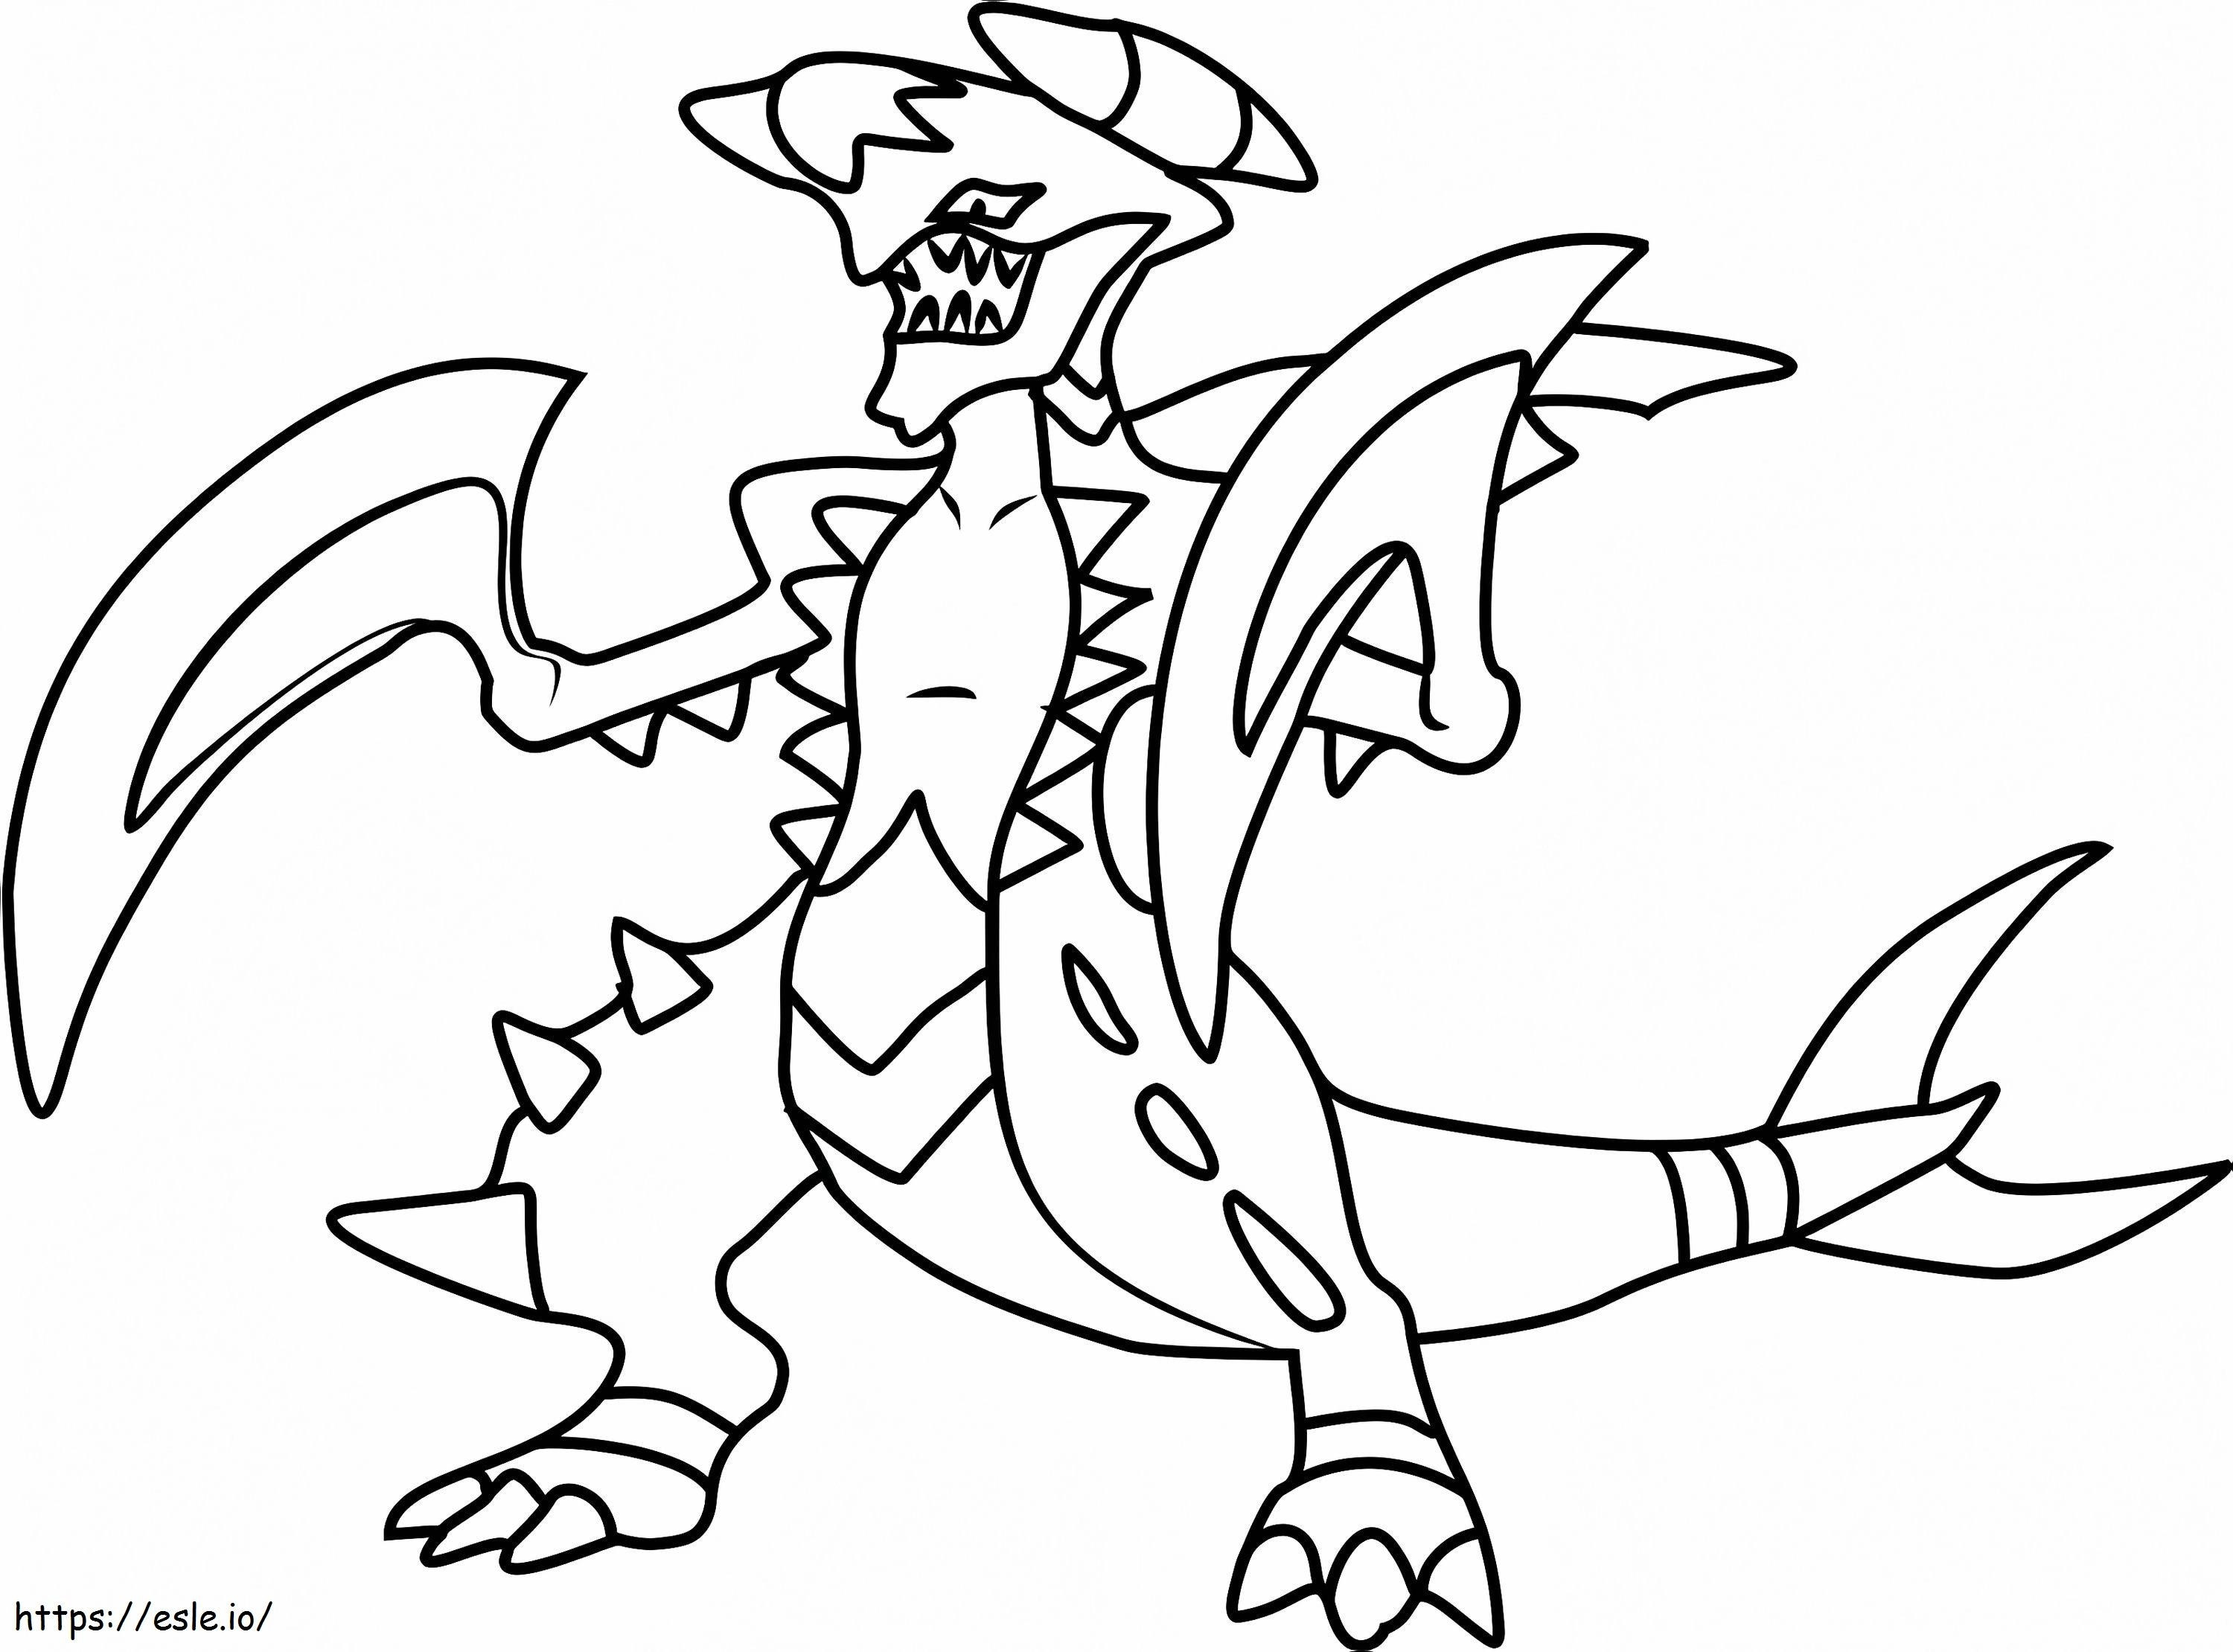 Coloriage  Garchomp Pokémon A4 à imprimer dessin